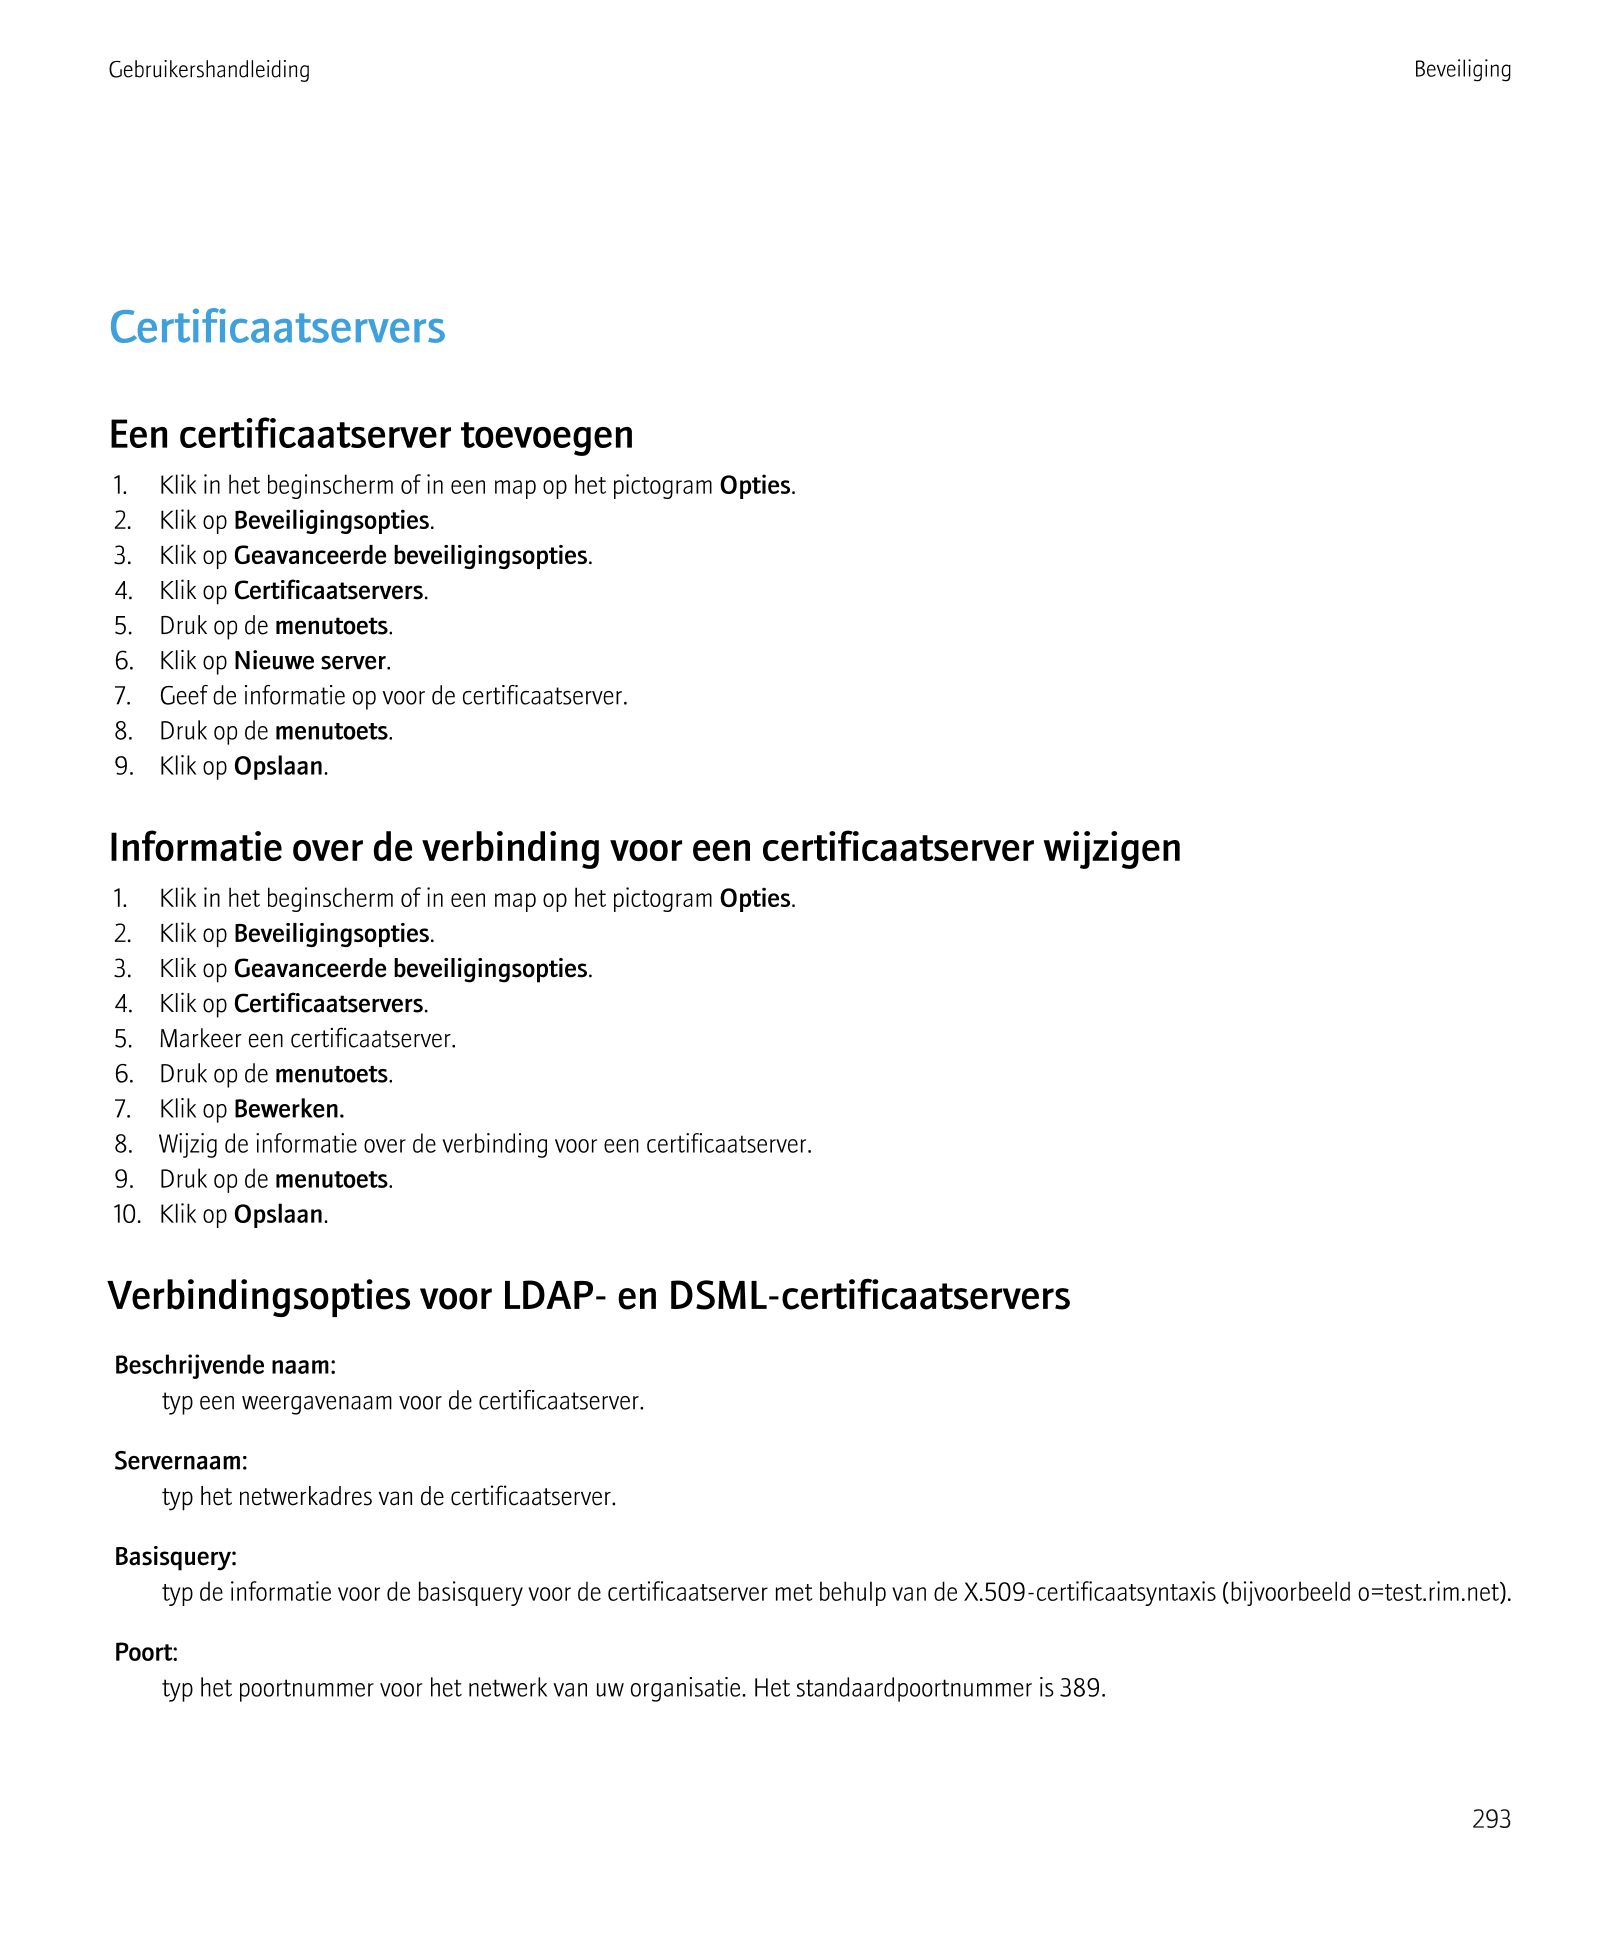 Gebruikershandleiding Beveiliging
Certificaatservers
Een certificaatserver toevoegen
1.     Klik in het beginscherm of in een ma